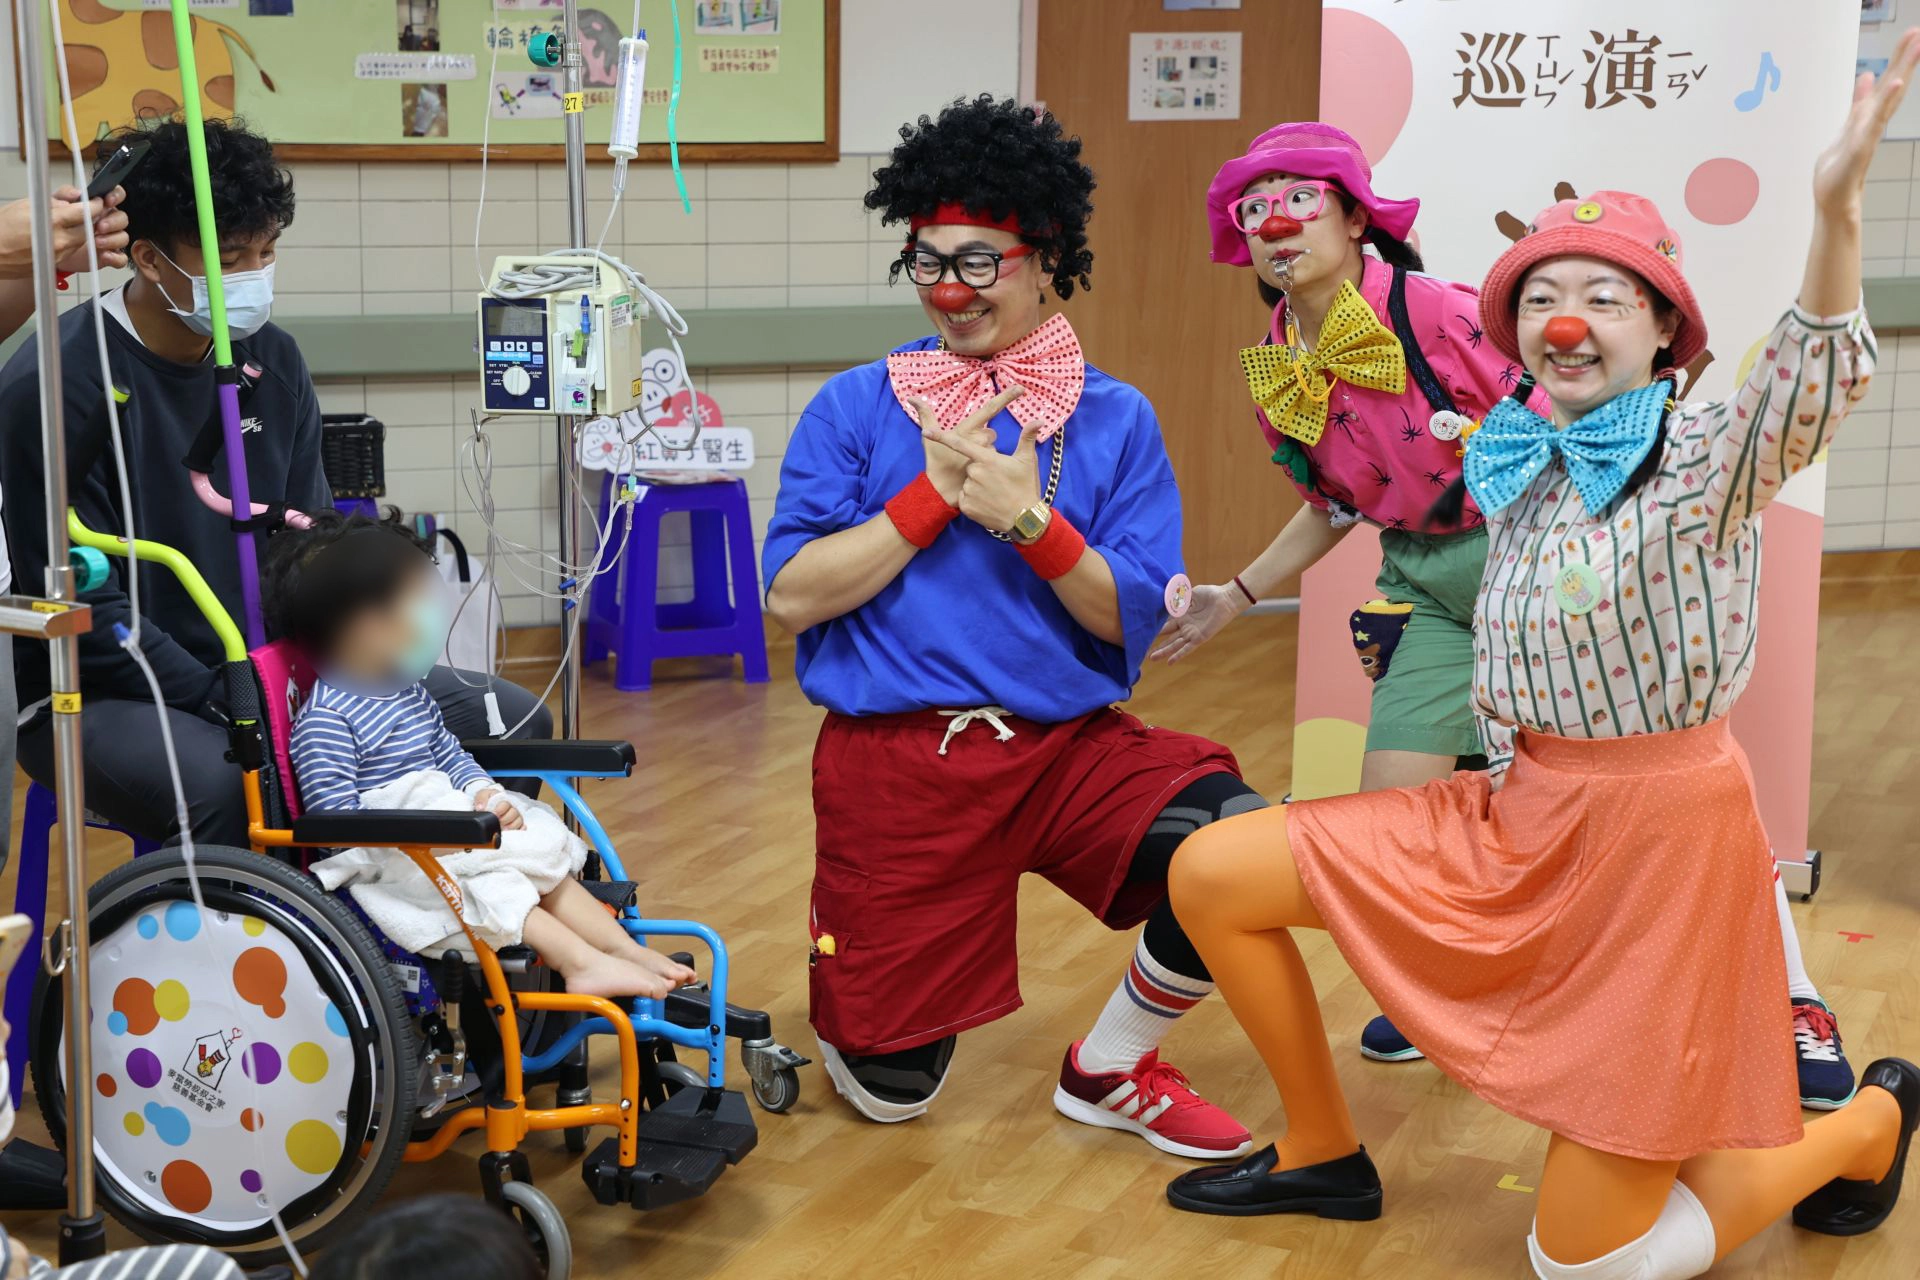 小丑醫生暖心慶兒童節 花慈震後關懷住院病童